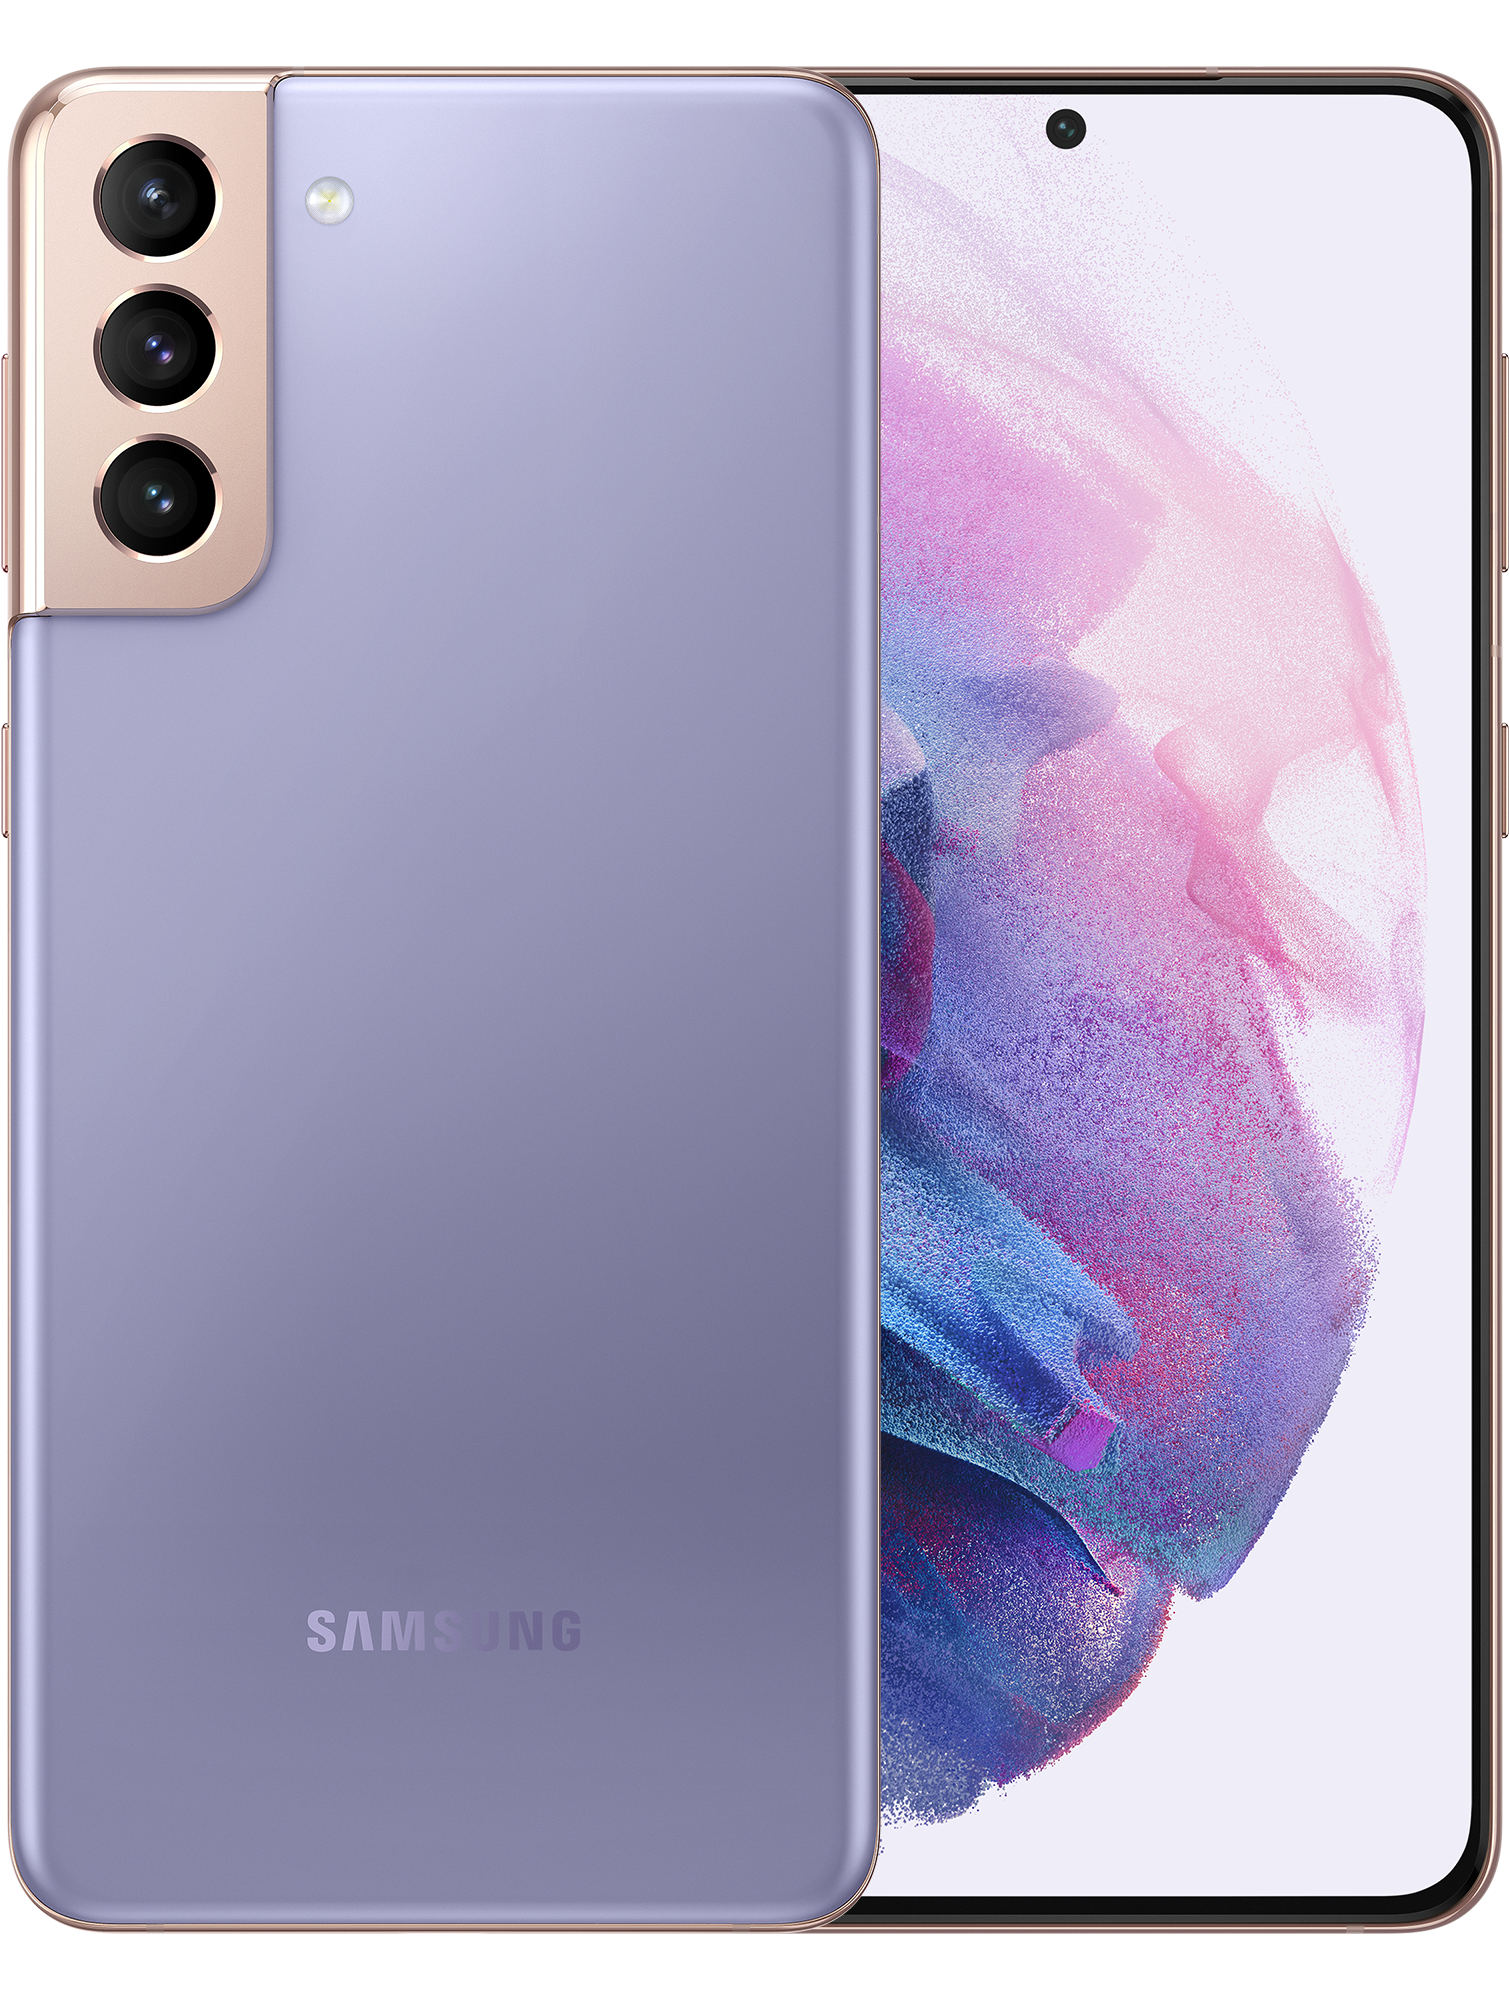 Samsung Galaxy S21 Plus 256GB Phantom Violet